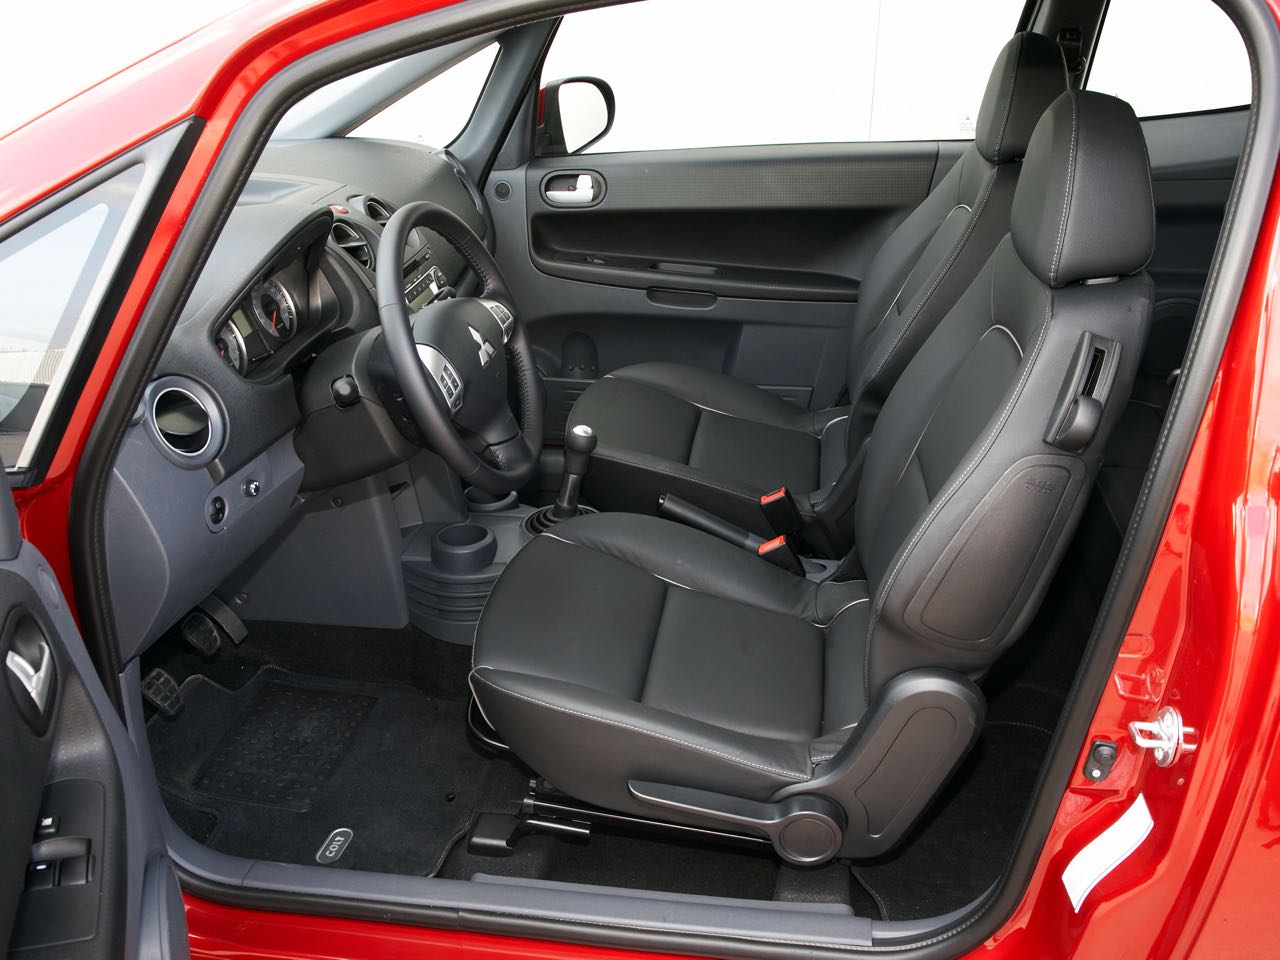 Mitsubishi Colt 2009 interior